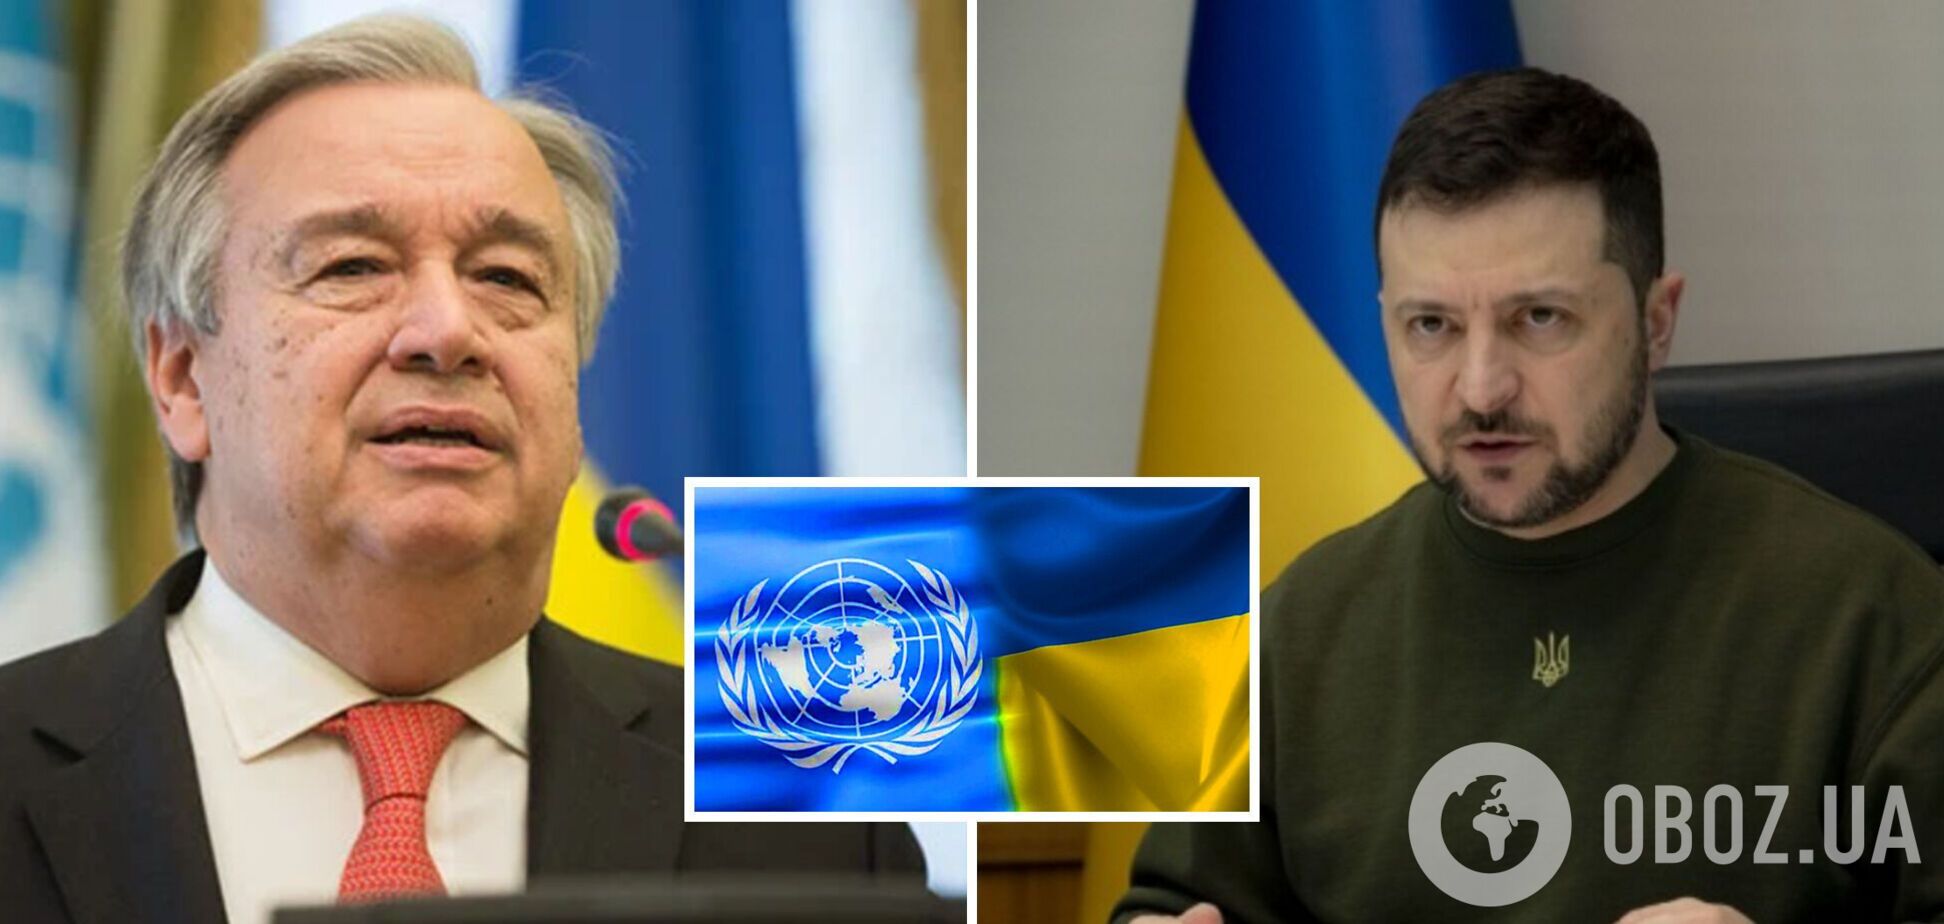 'В Украине решается, каким будет будущее': Зеленский на встрече с генсеком ООН указал на ключевые вызовы